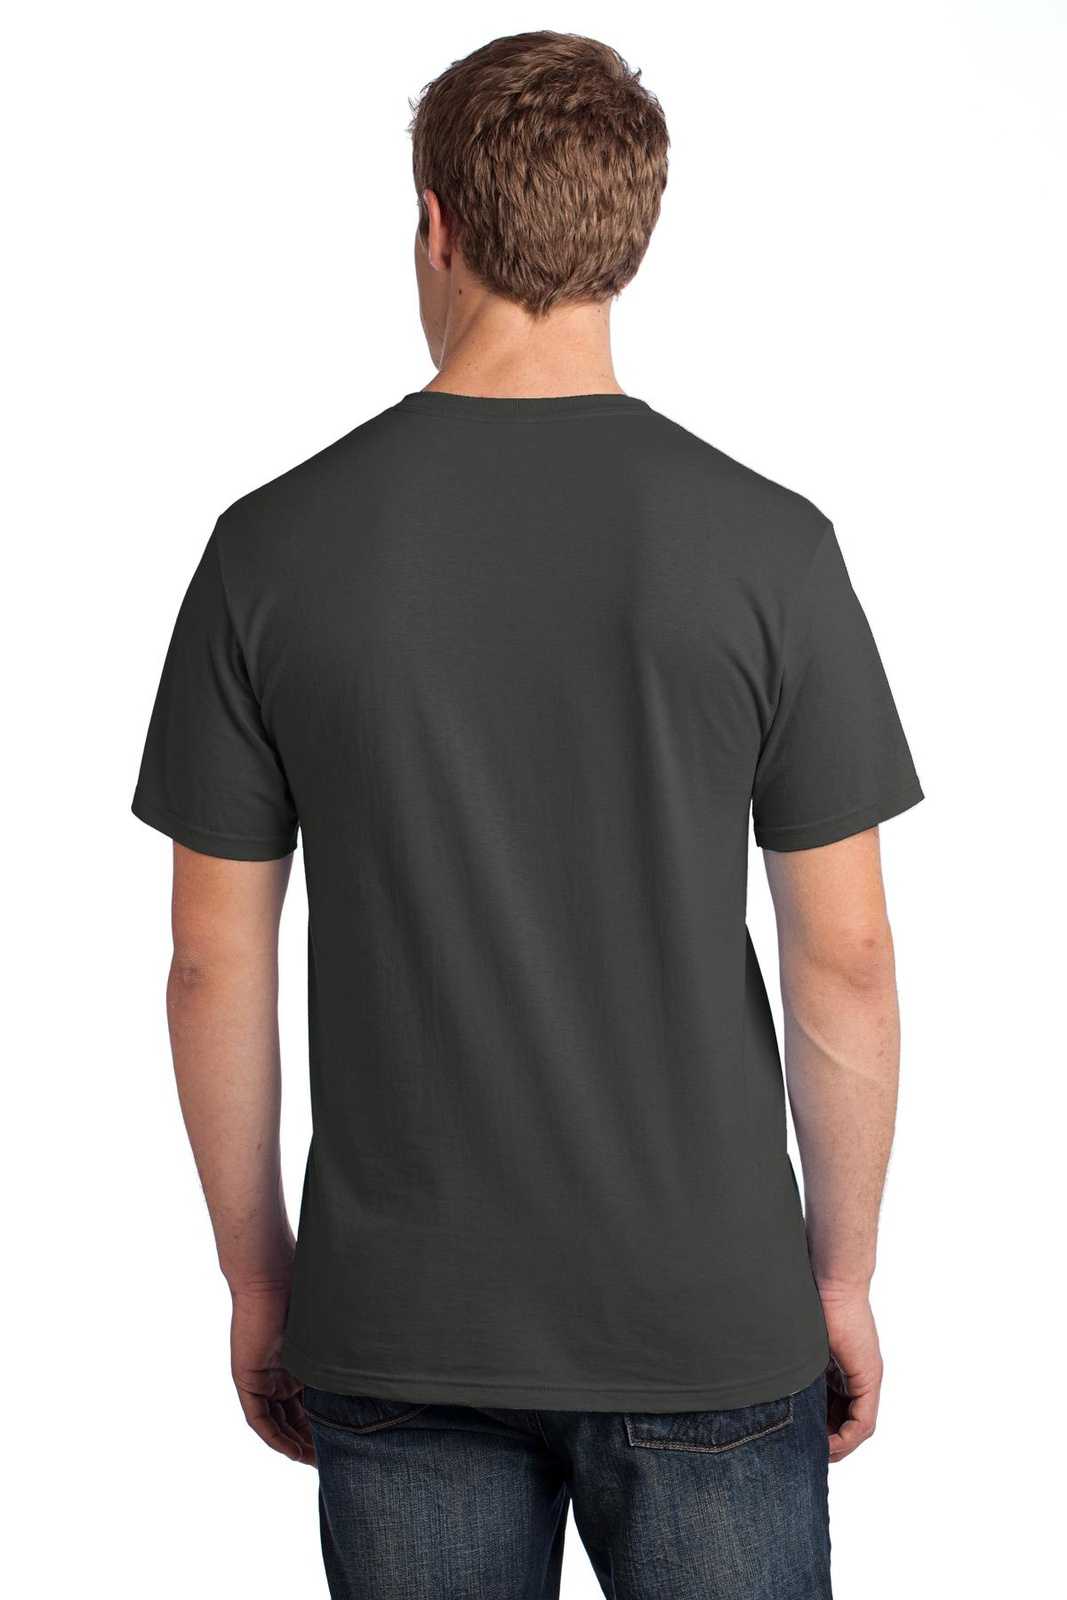 Ash Gray Dri-fit t shirt Men's & Women's indoor/outdoor Sports